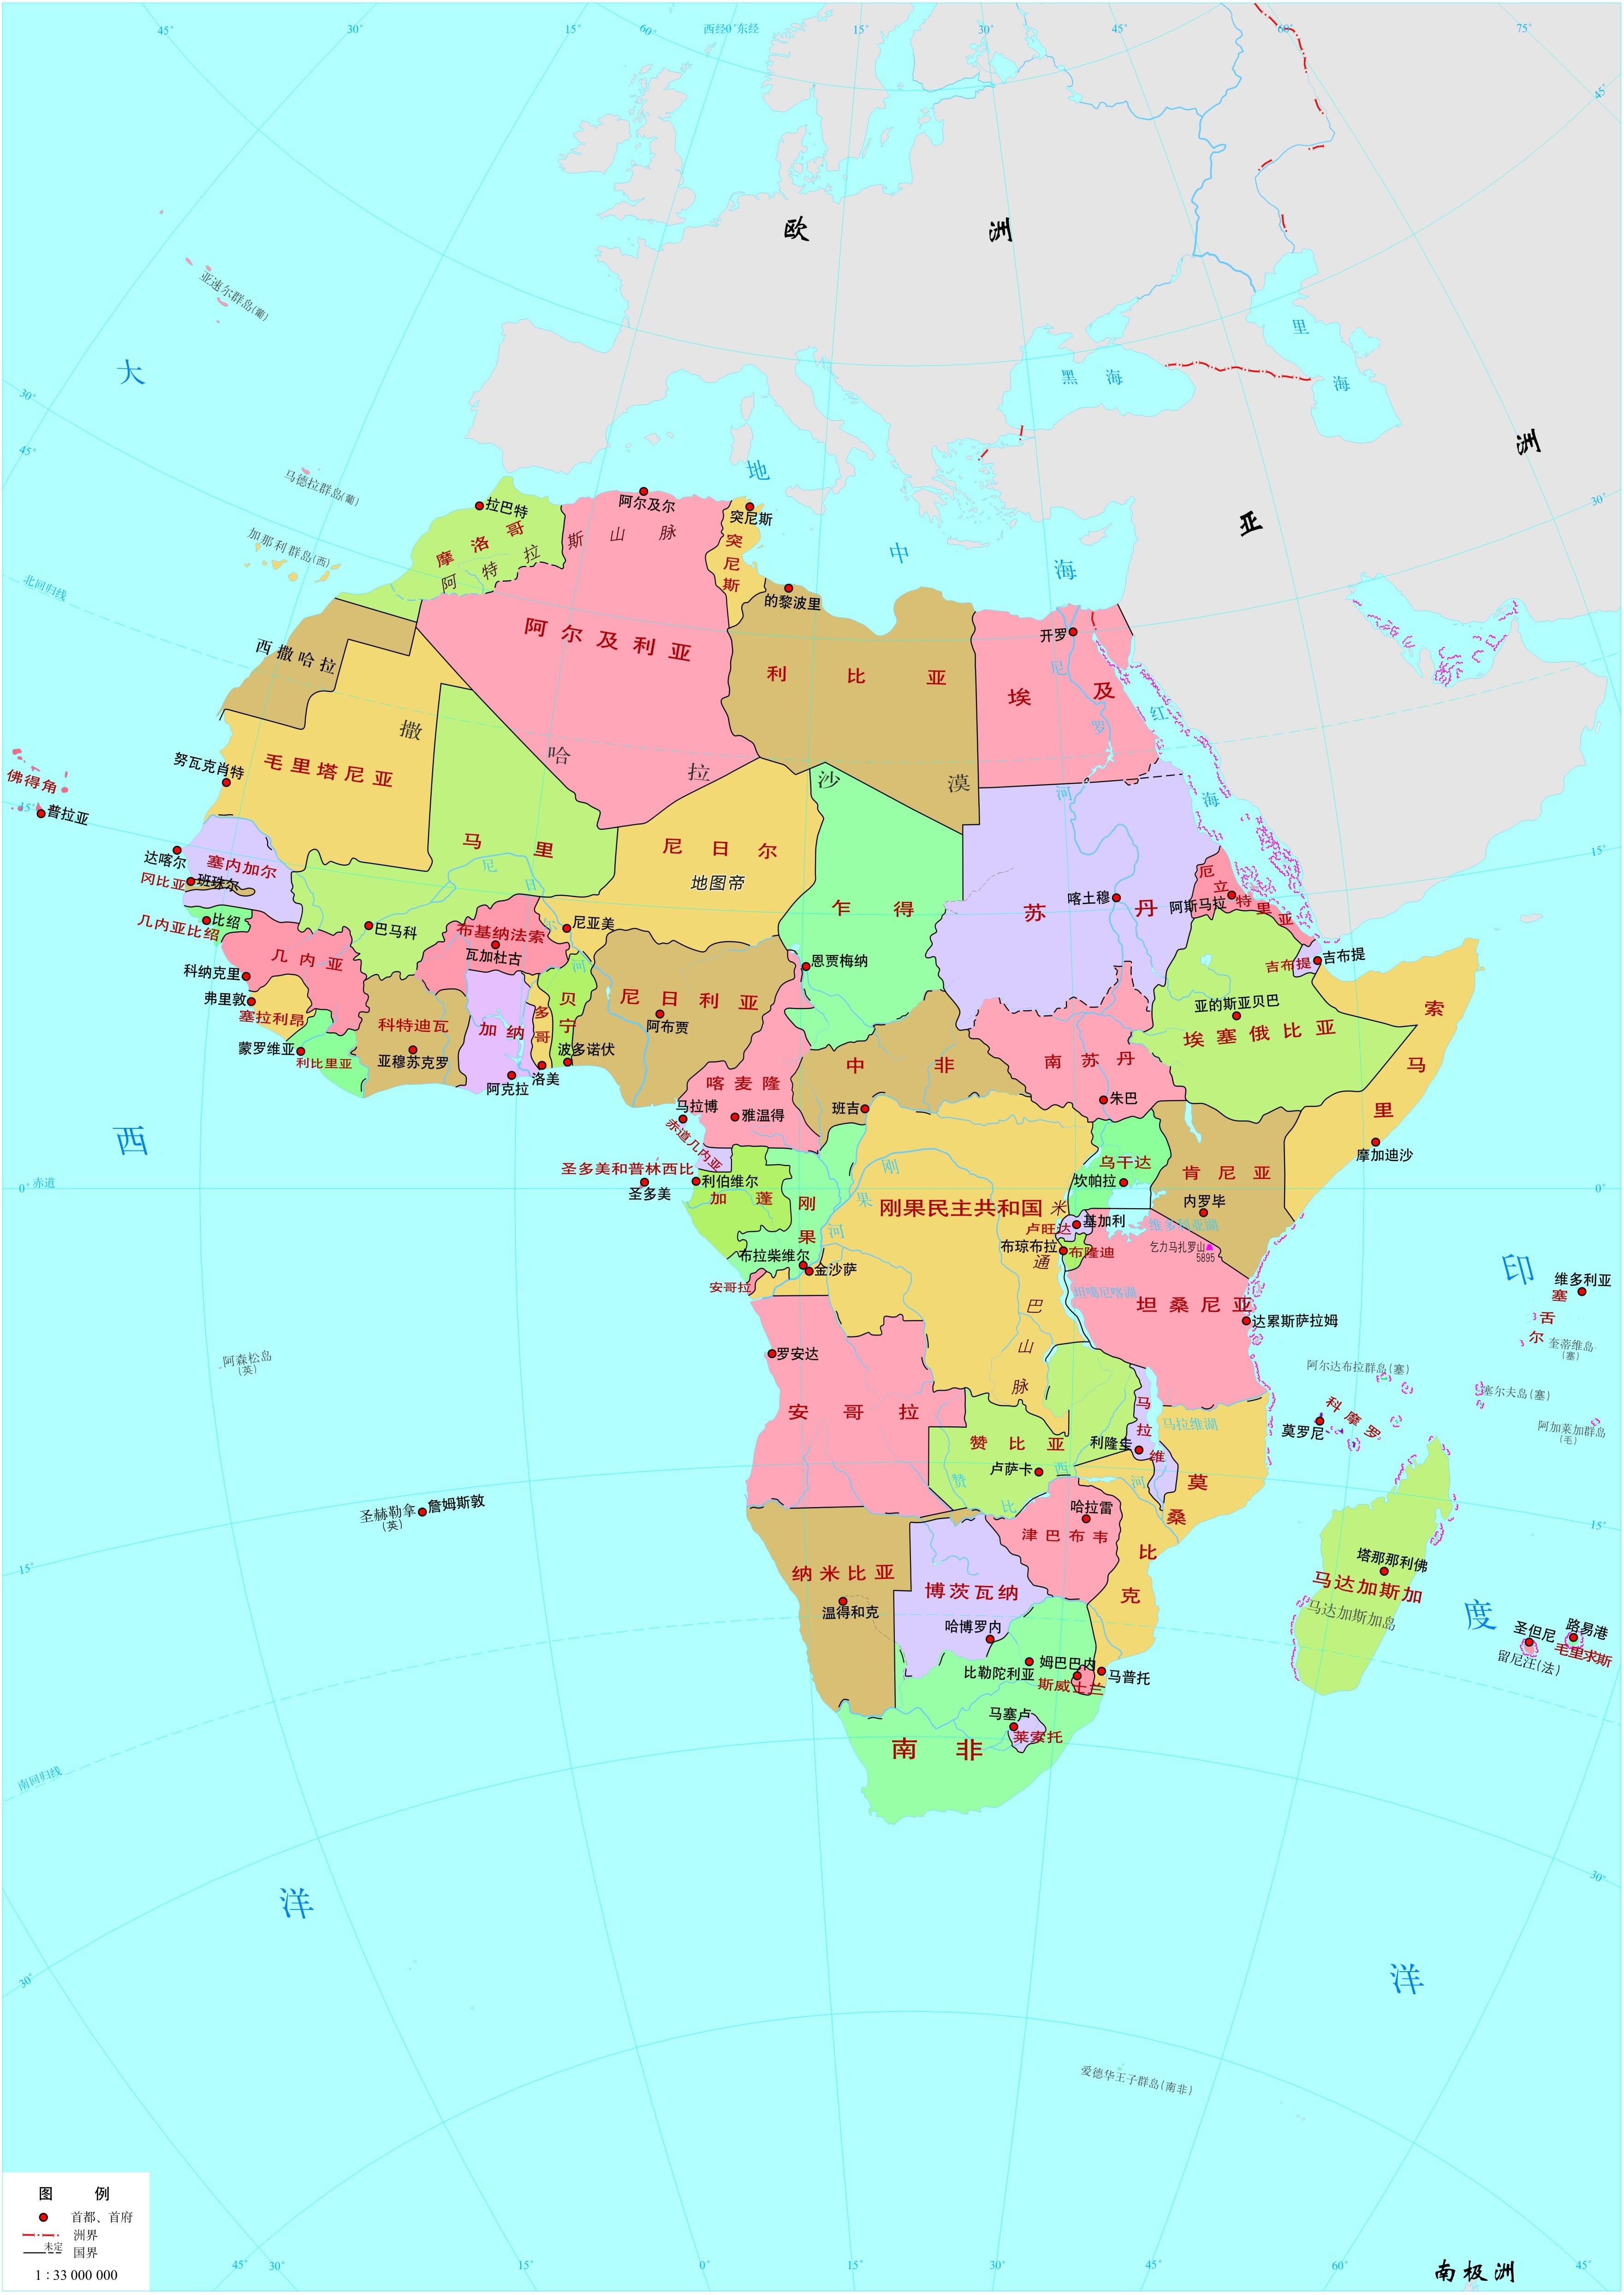 非洲：共有54个国家